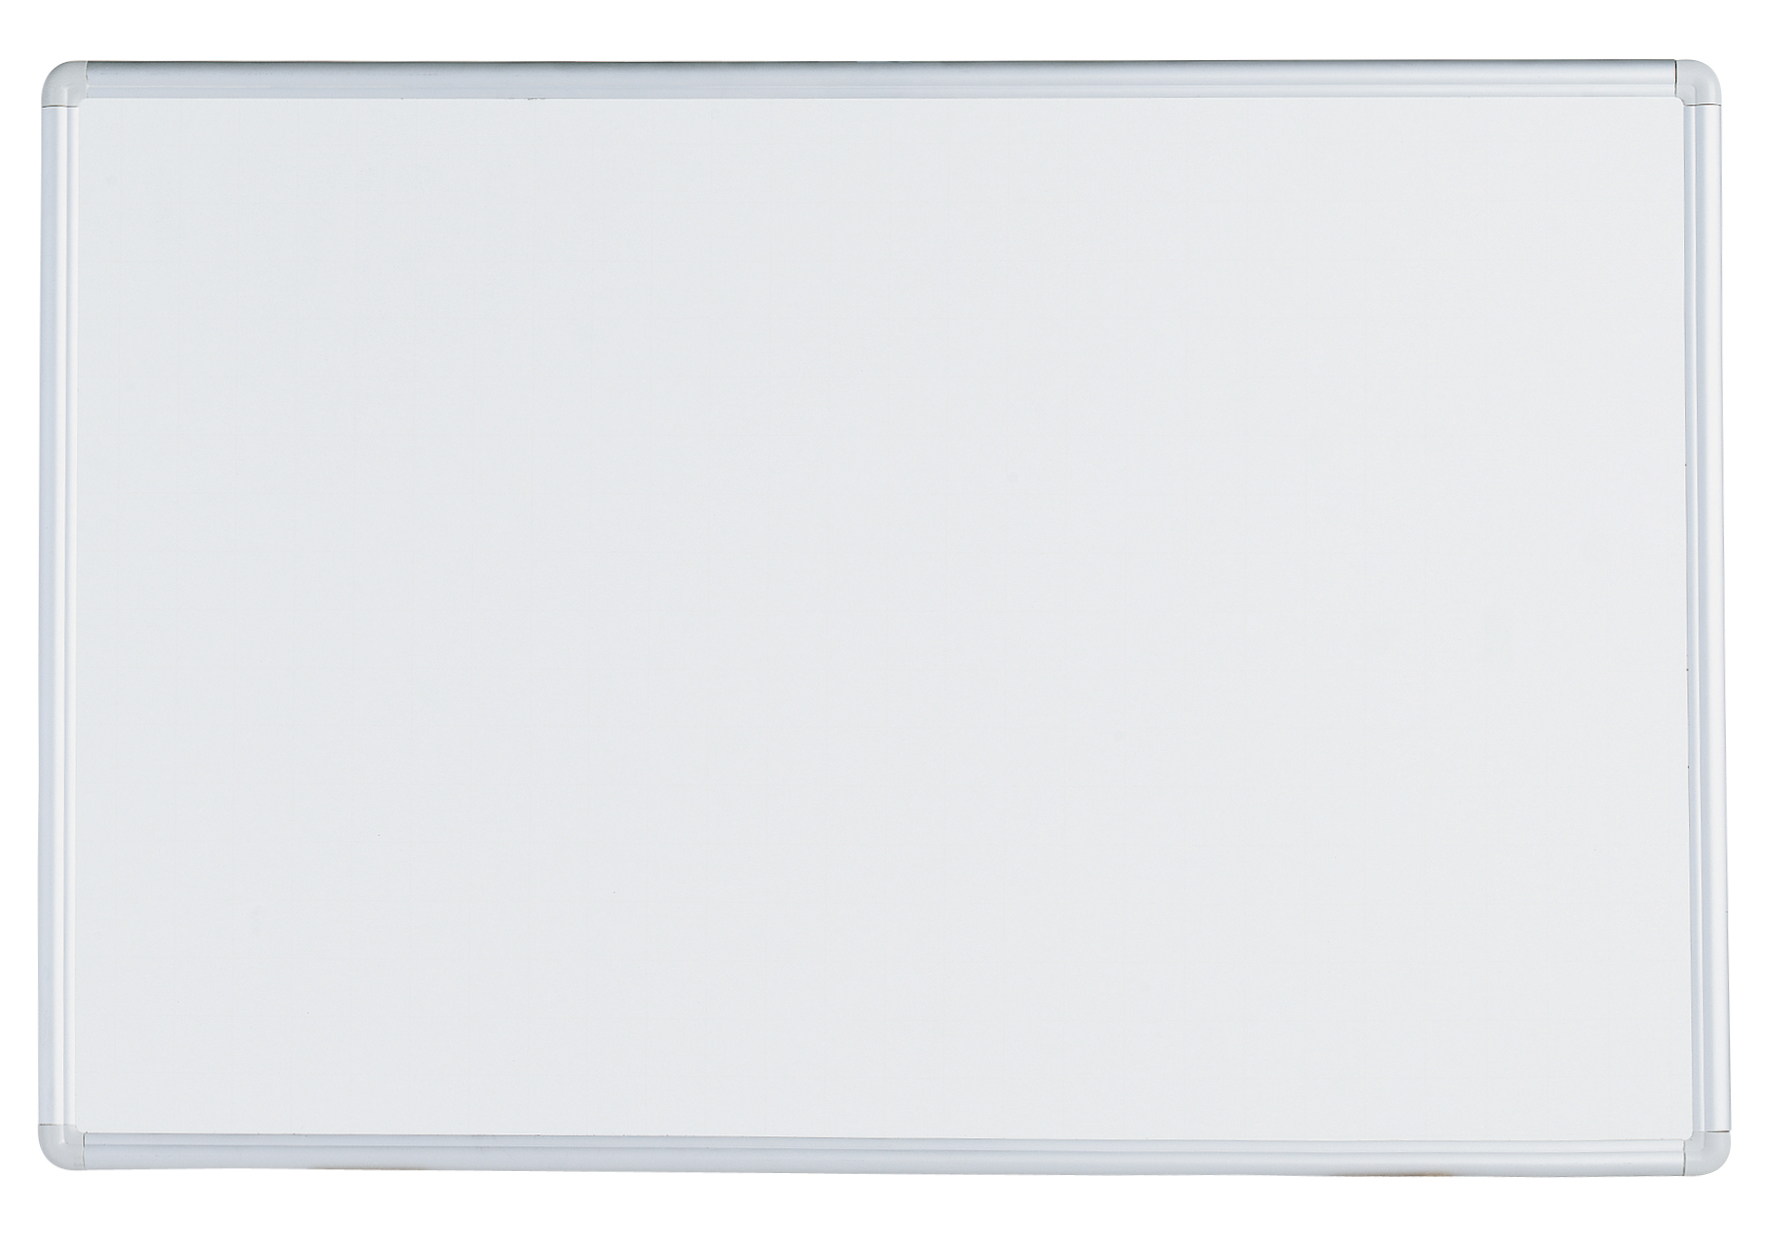 Aluminium Framed Dry-Wipe Whiteboard